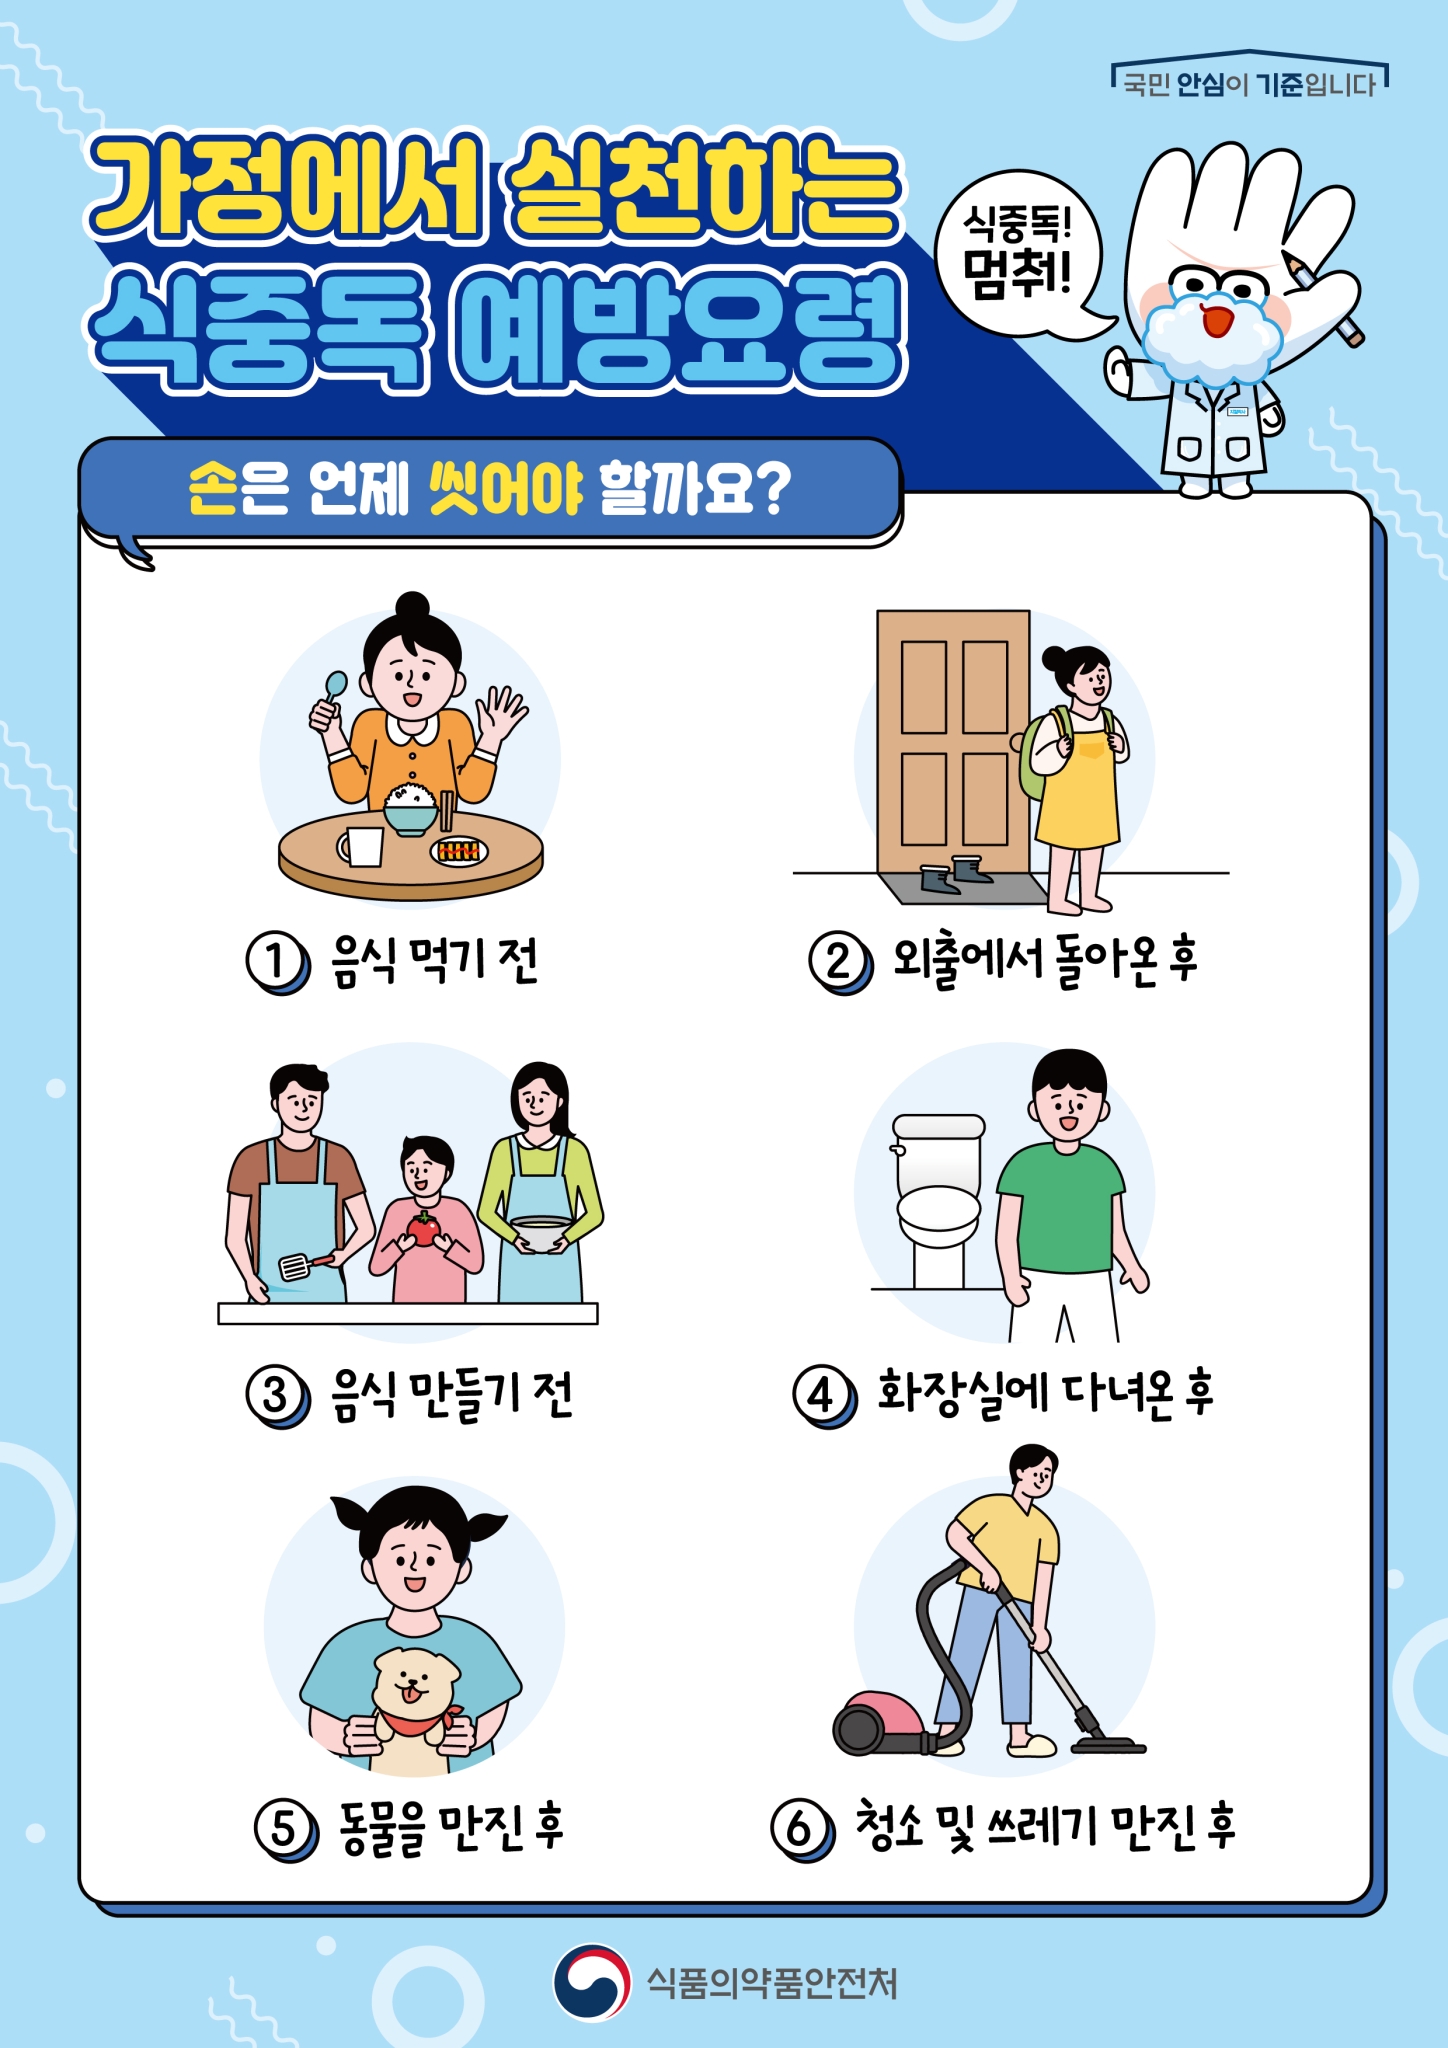 가정에서 실천하는 식중독 예방요령(가정통신문2)